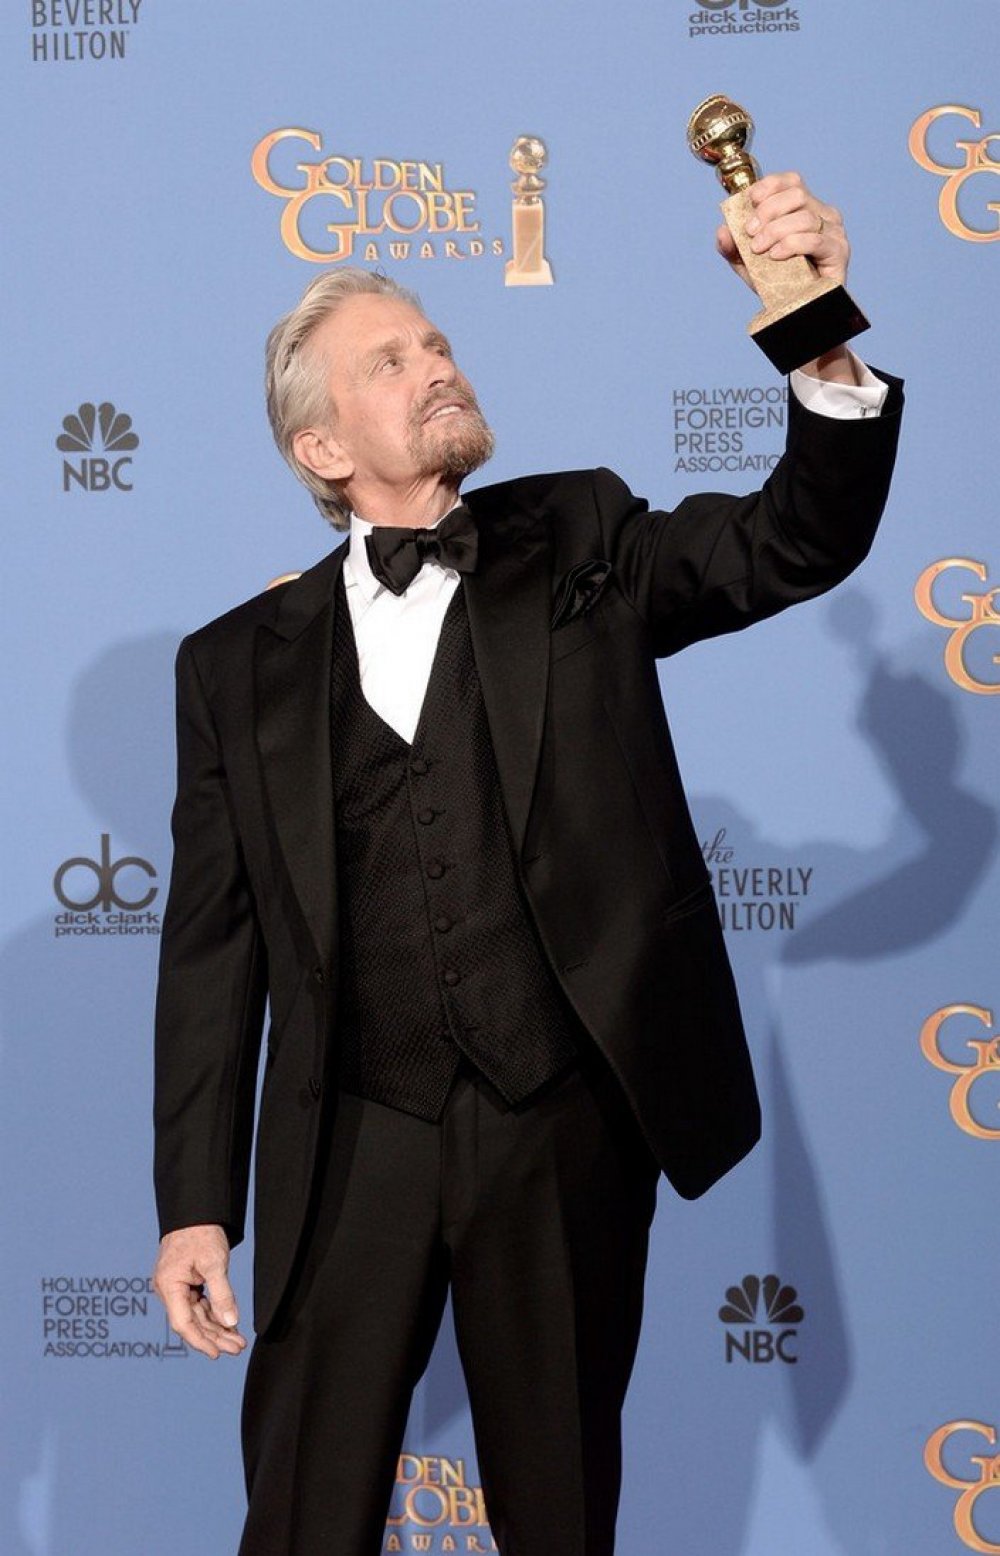 Golden Globe Awards 2014